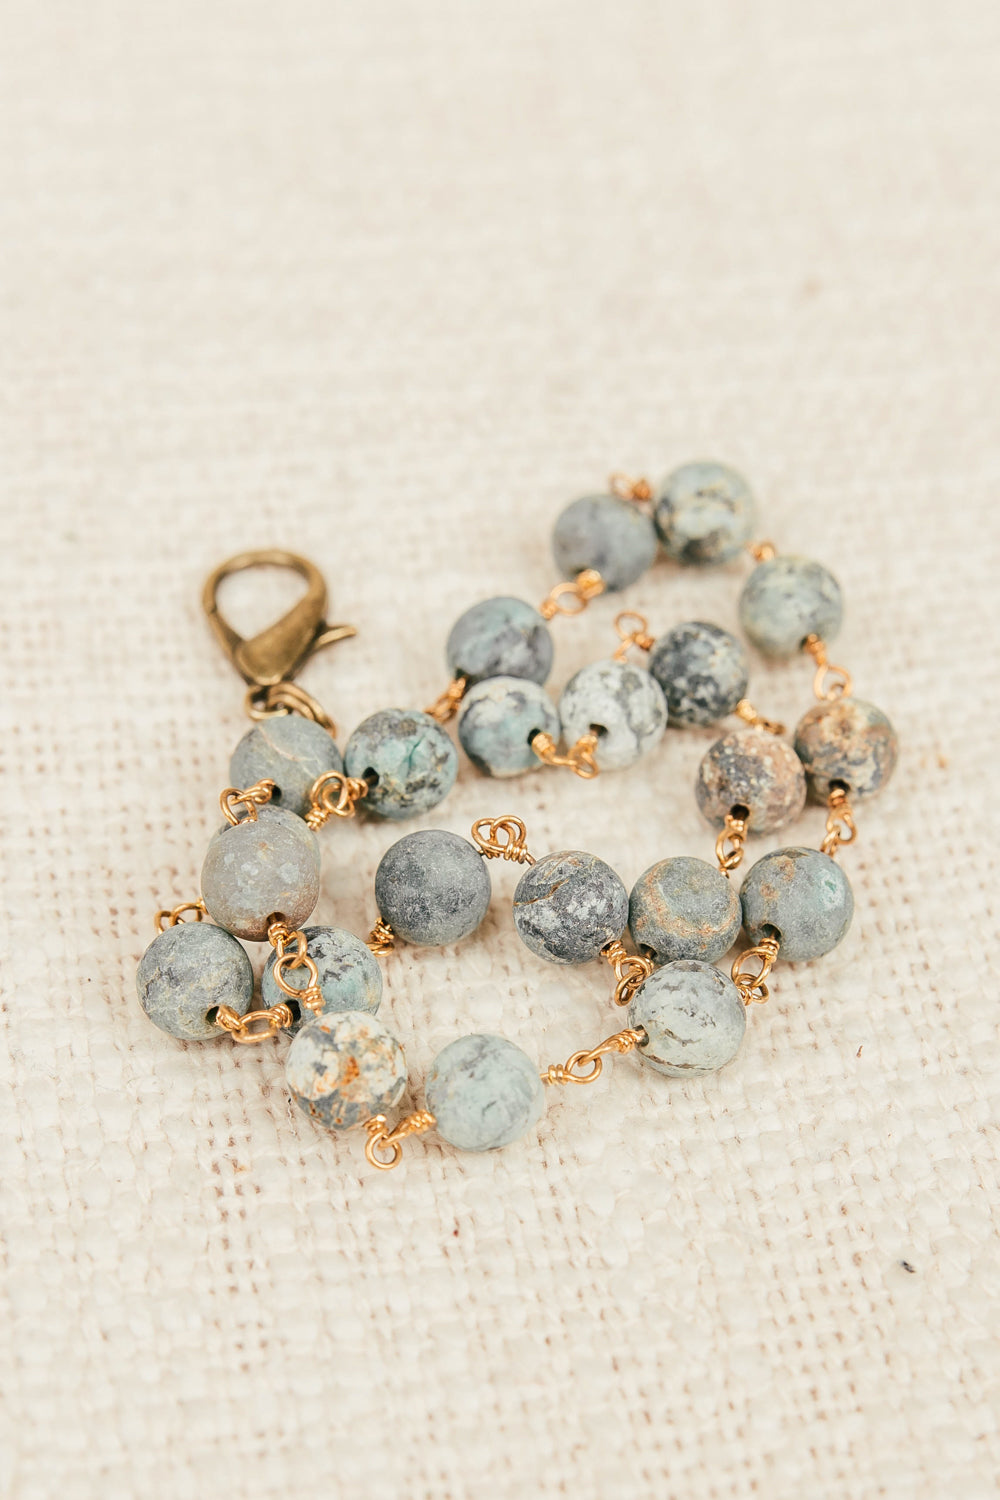 Beads - Boho Glam for your Designer Handbag – Vintage Boho Bags